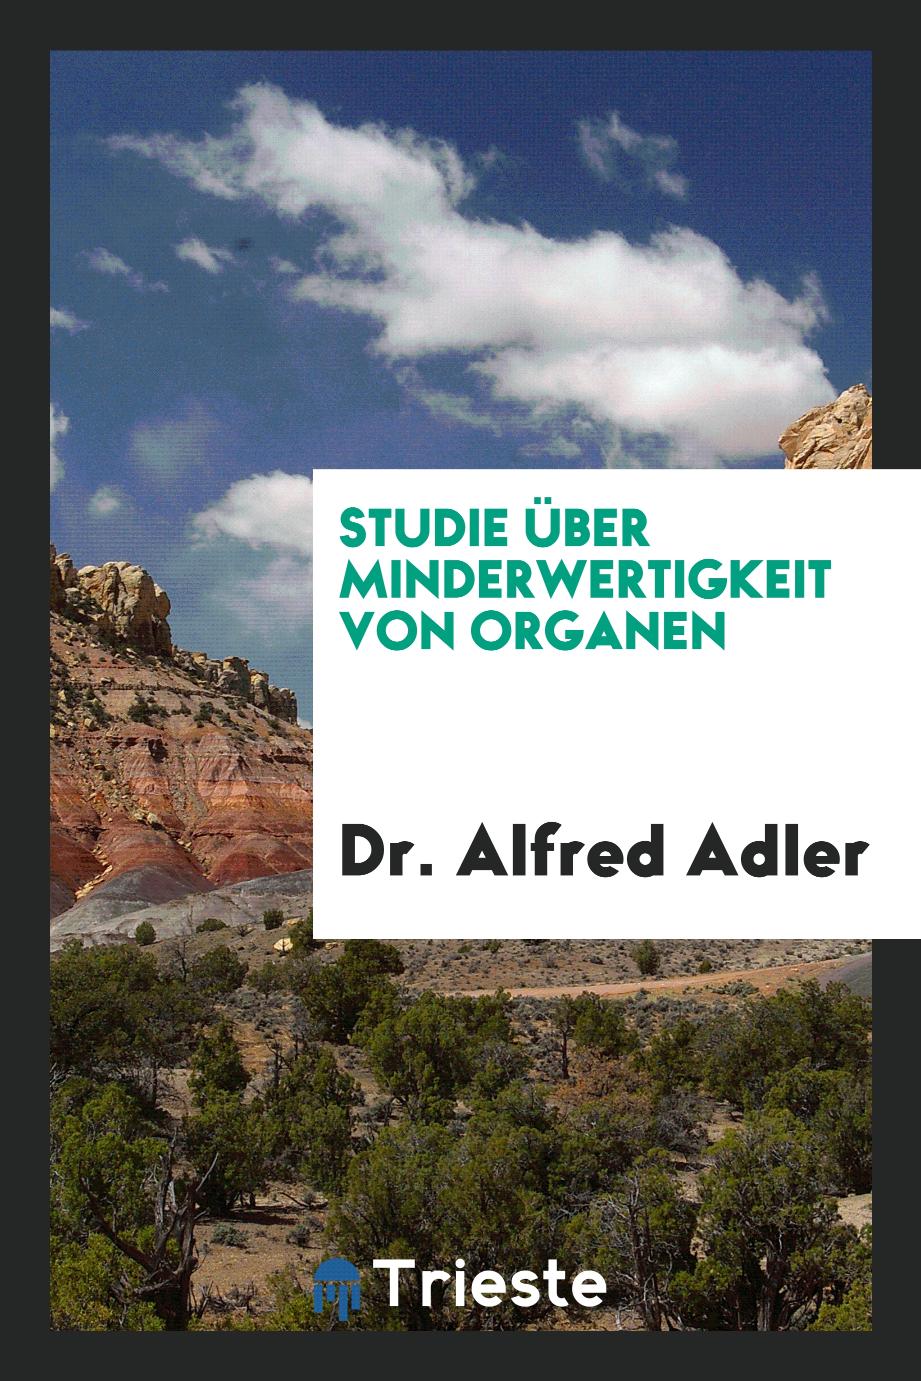 Dr. Alfred Adler - Studie über Minderwertigkeit von Organen